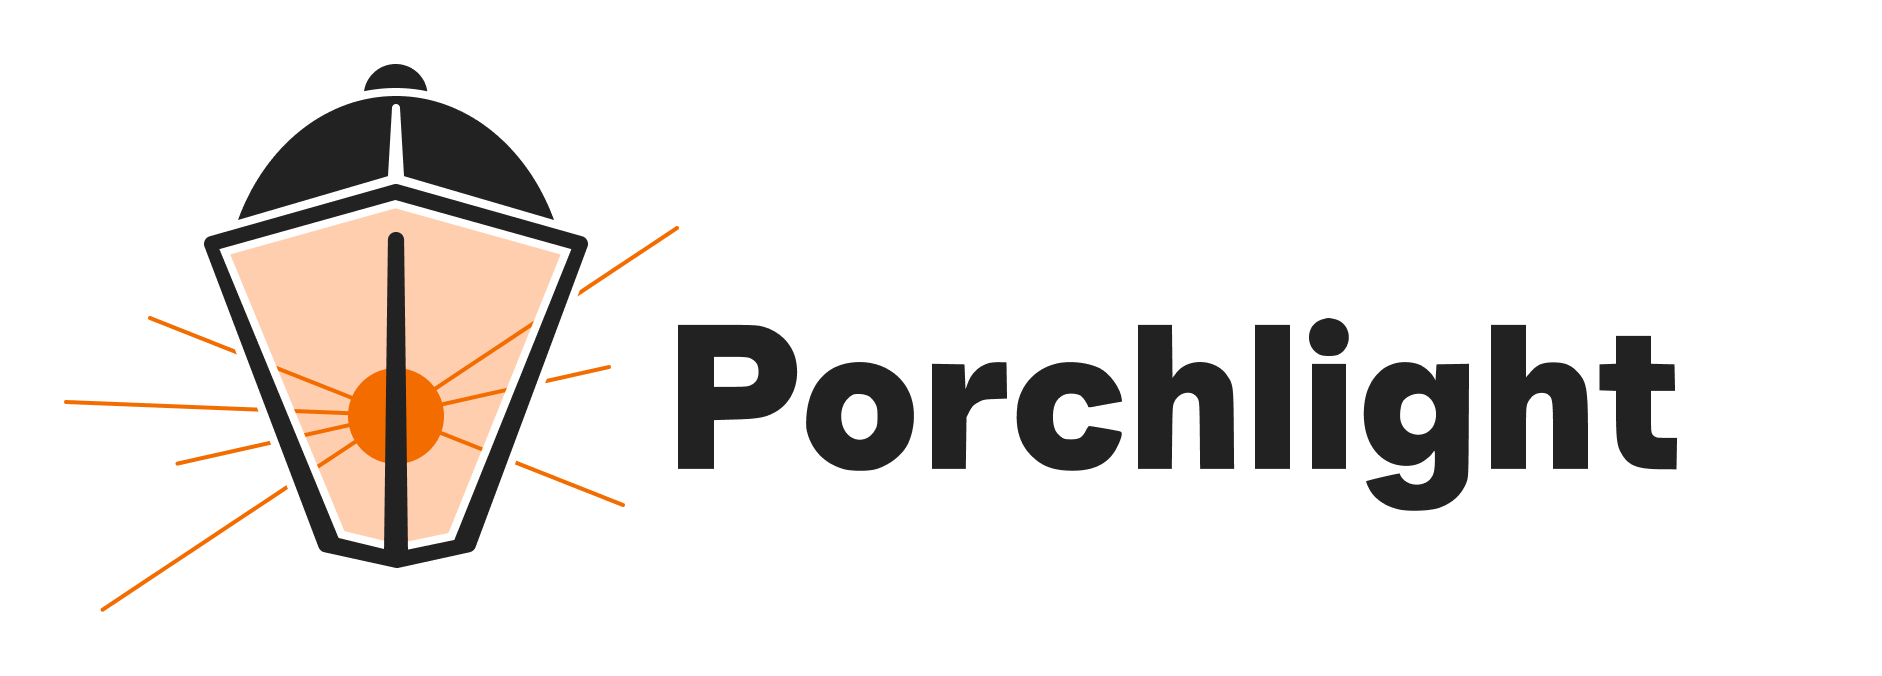 Porchlight Design System logo